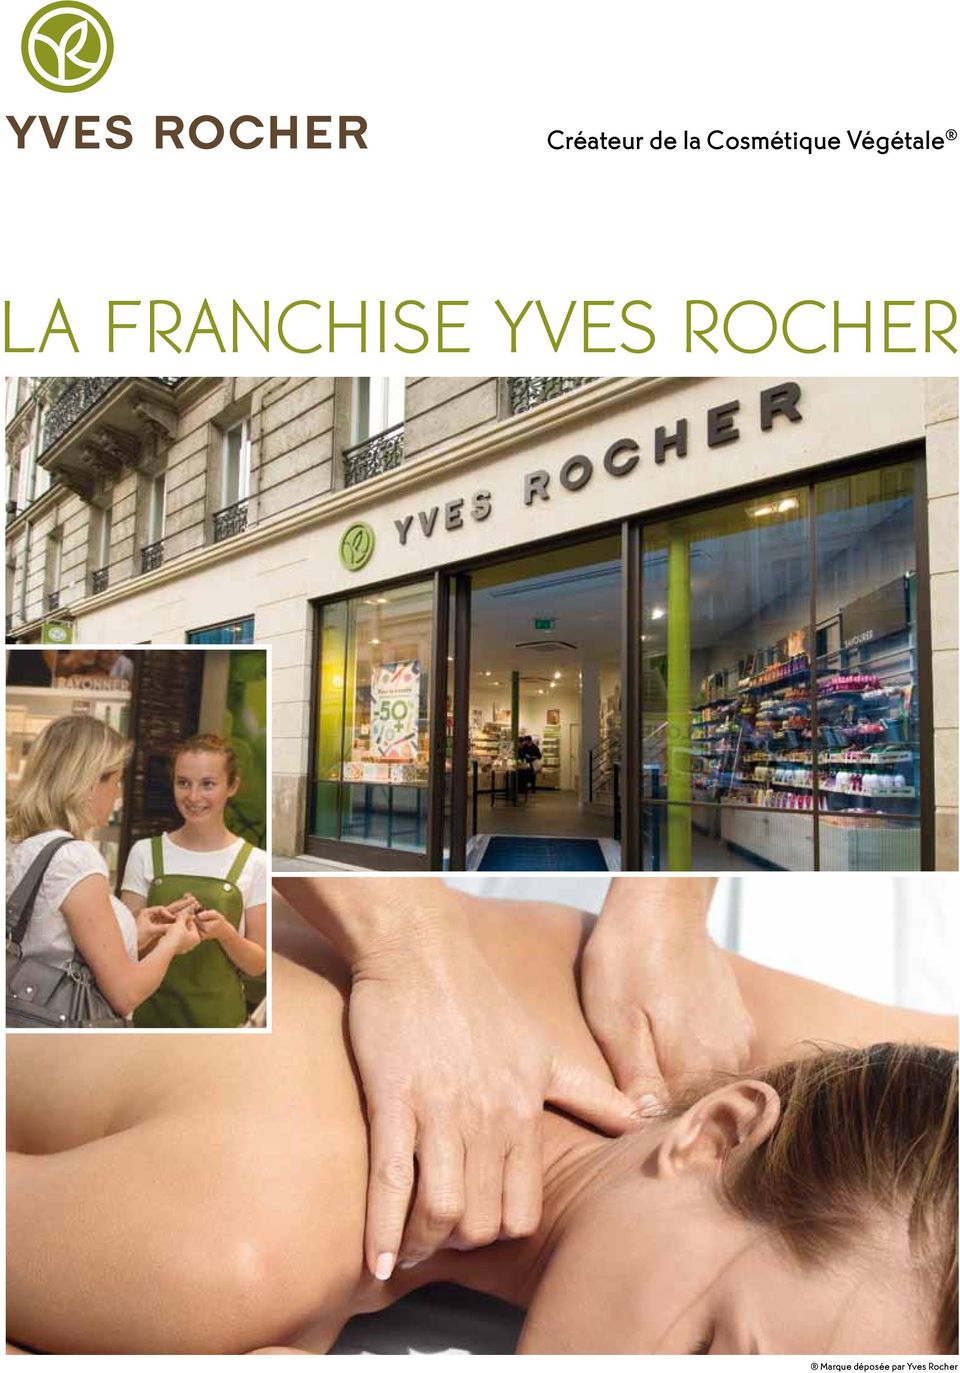 FRANCHISE YVES ROCHER